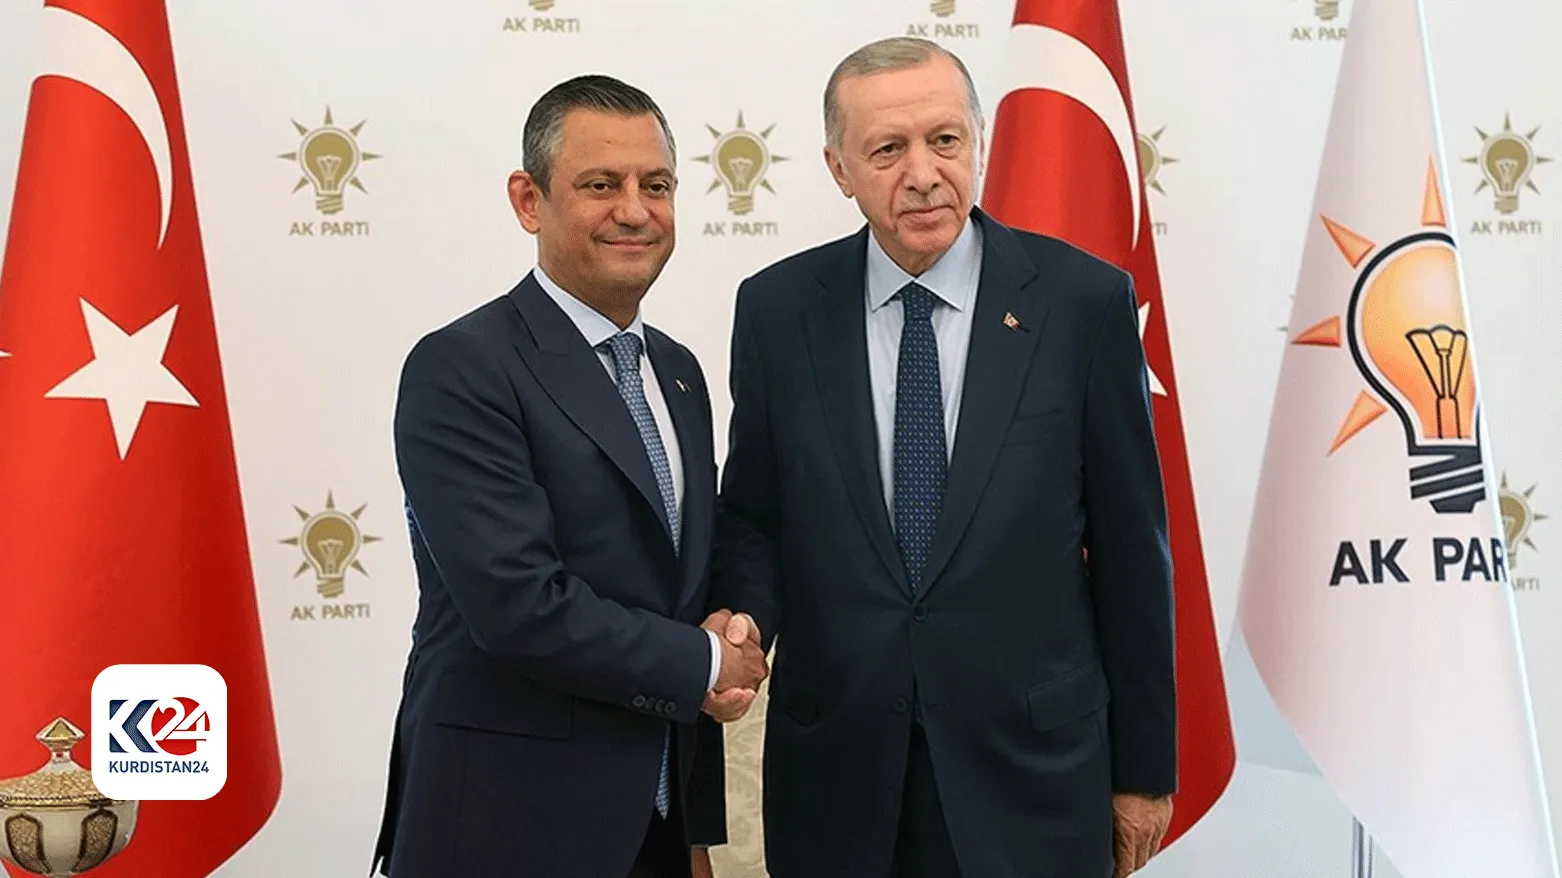 الرئيس التركي رجب طيب أردوغان || رئيس حزب "الشعب الجمهوري  أوزغور أوزيل 